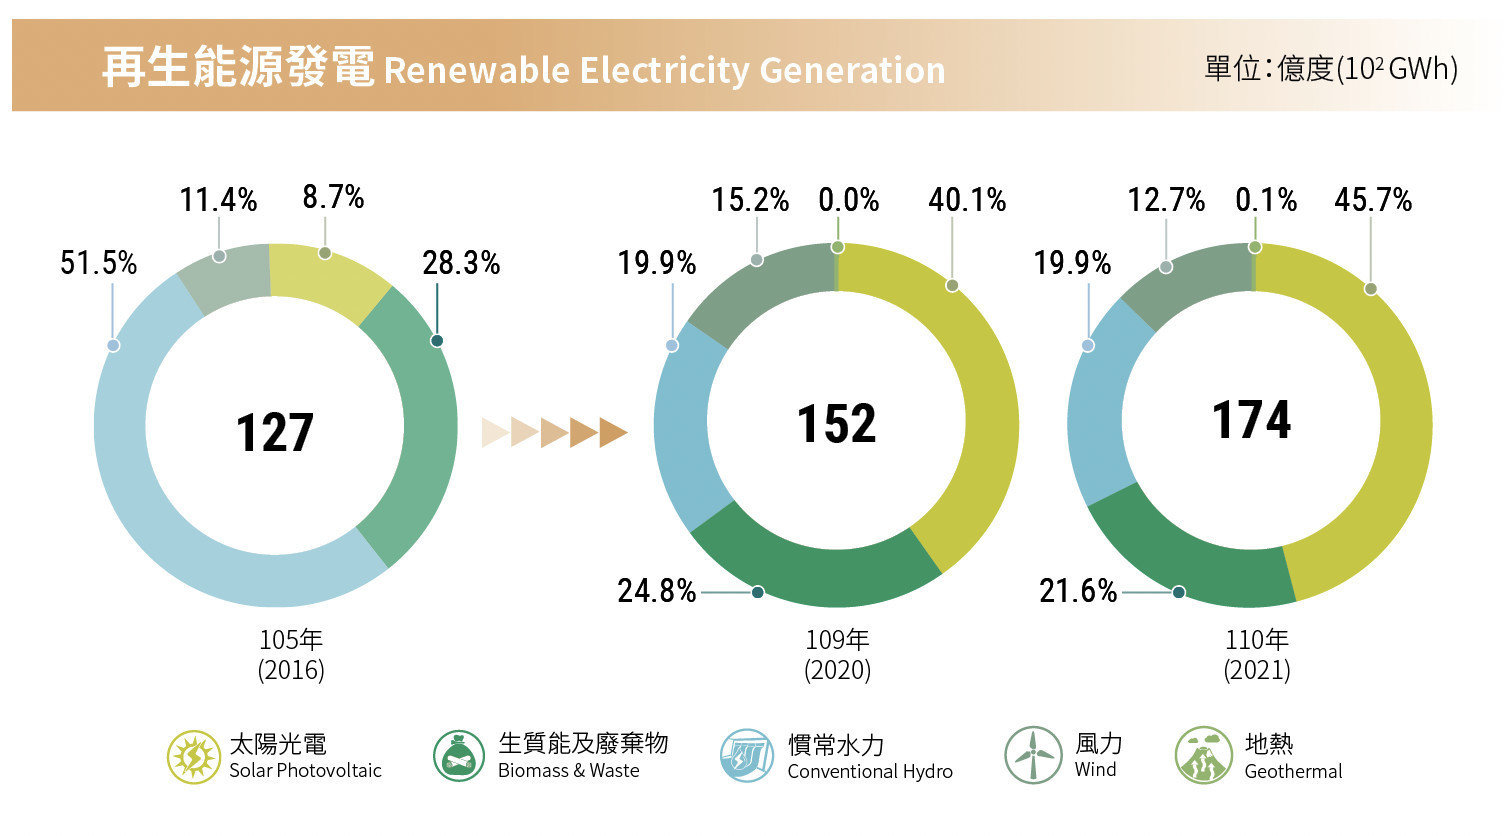 台灣再生能源、再生能源發電、再生能源發電比例、綠色能源佔比、再生能源、綠能發電